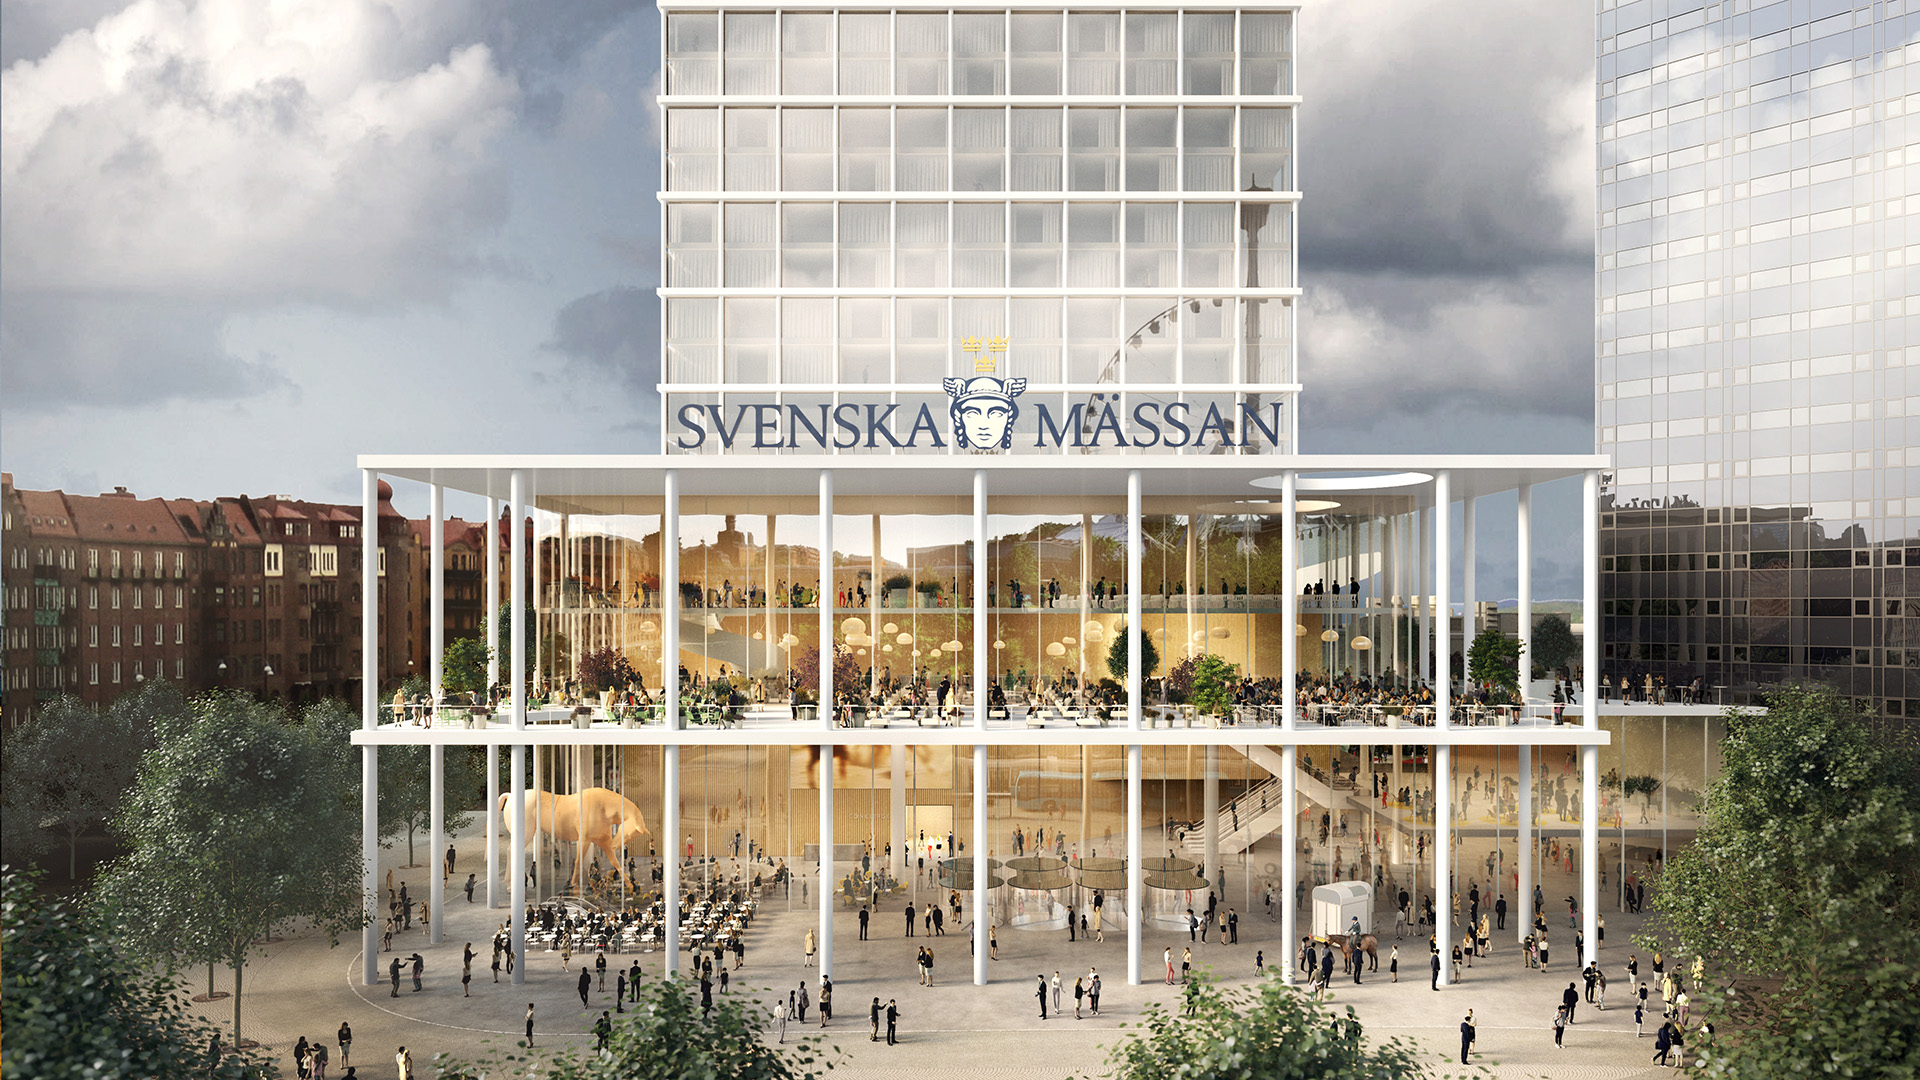 Visionsbild av hur Svenska Mässans entré kan se ut framöver.